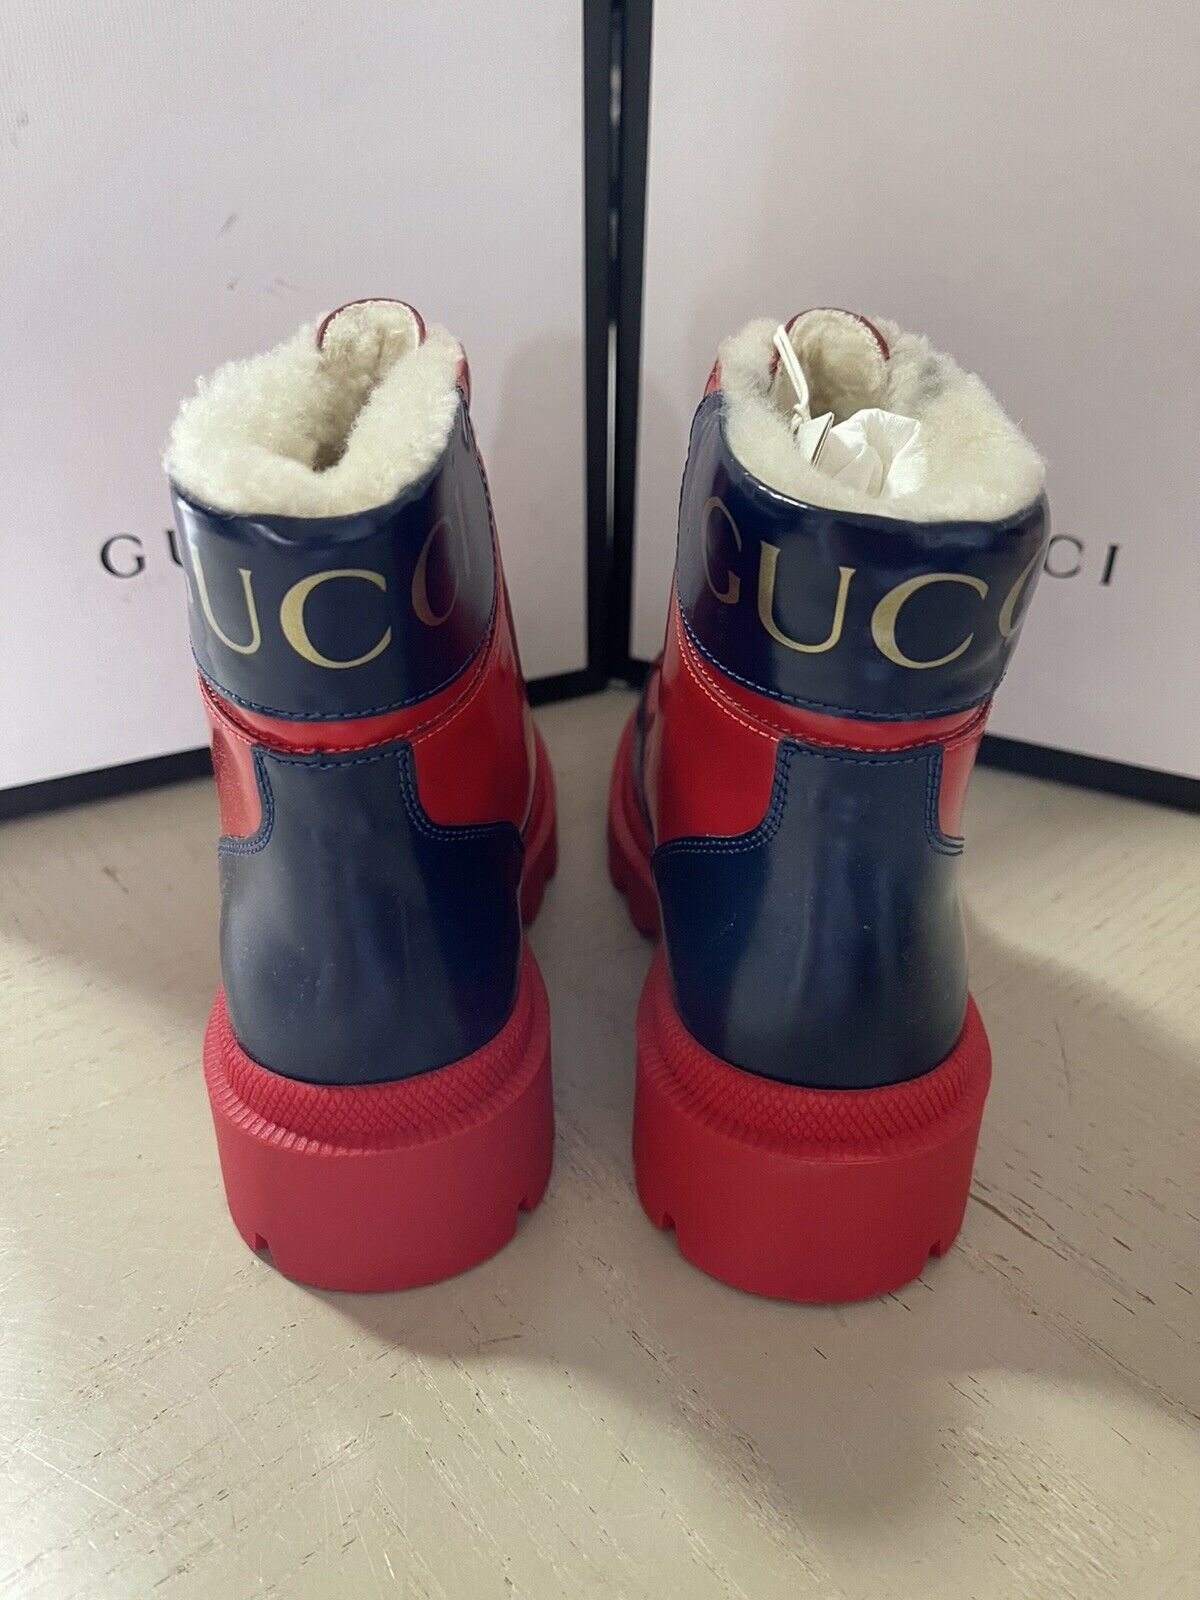 NIB Детские кожаные ботинки Gucci на подкладке из искусственного меха, красный/черный 32/1, возраст США 6,5 лет